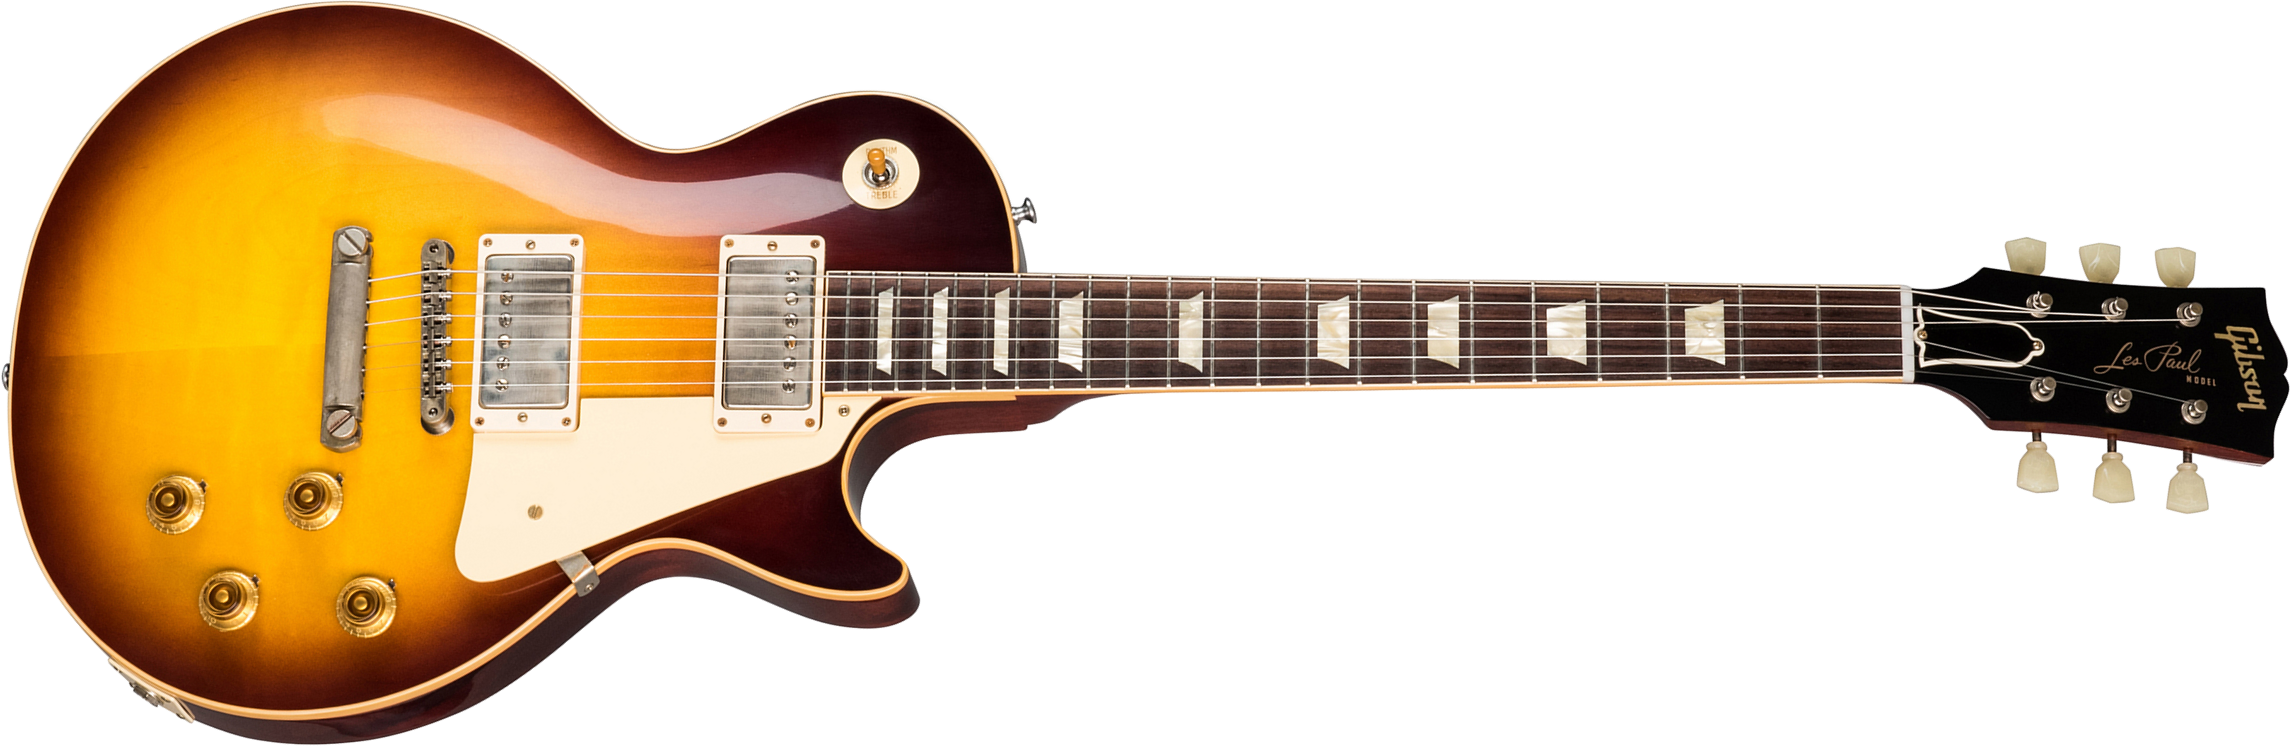 Gibson Custom Shop Les Paul Standard 1958 Reissue 2019 2h Ht Rw - Vos Bourbon Burst - Guitare Électrique Single Cut - Main picture